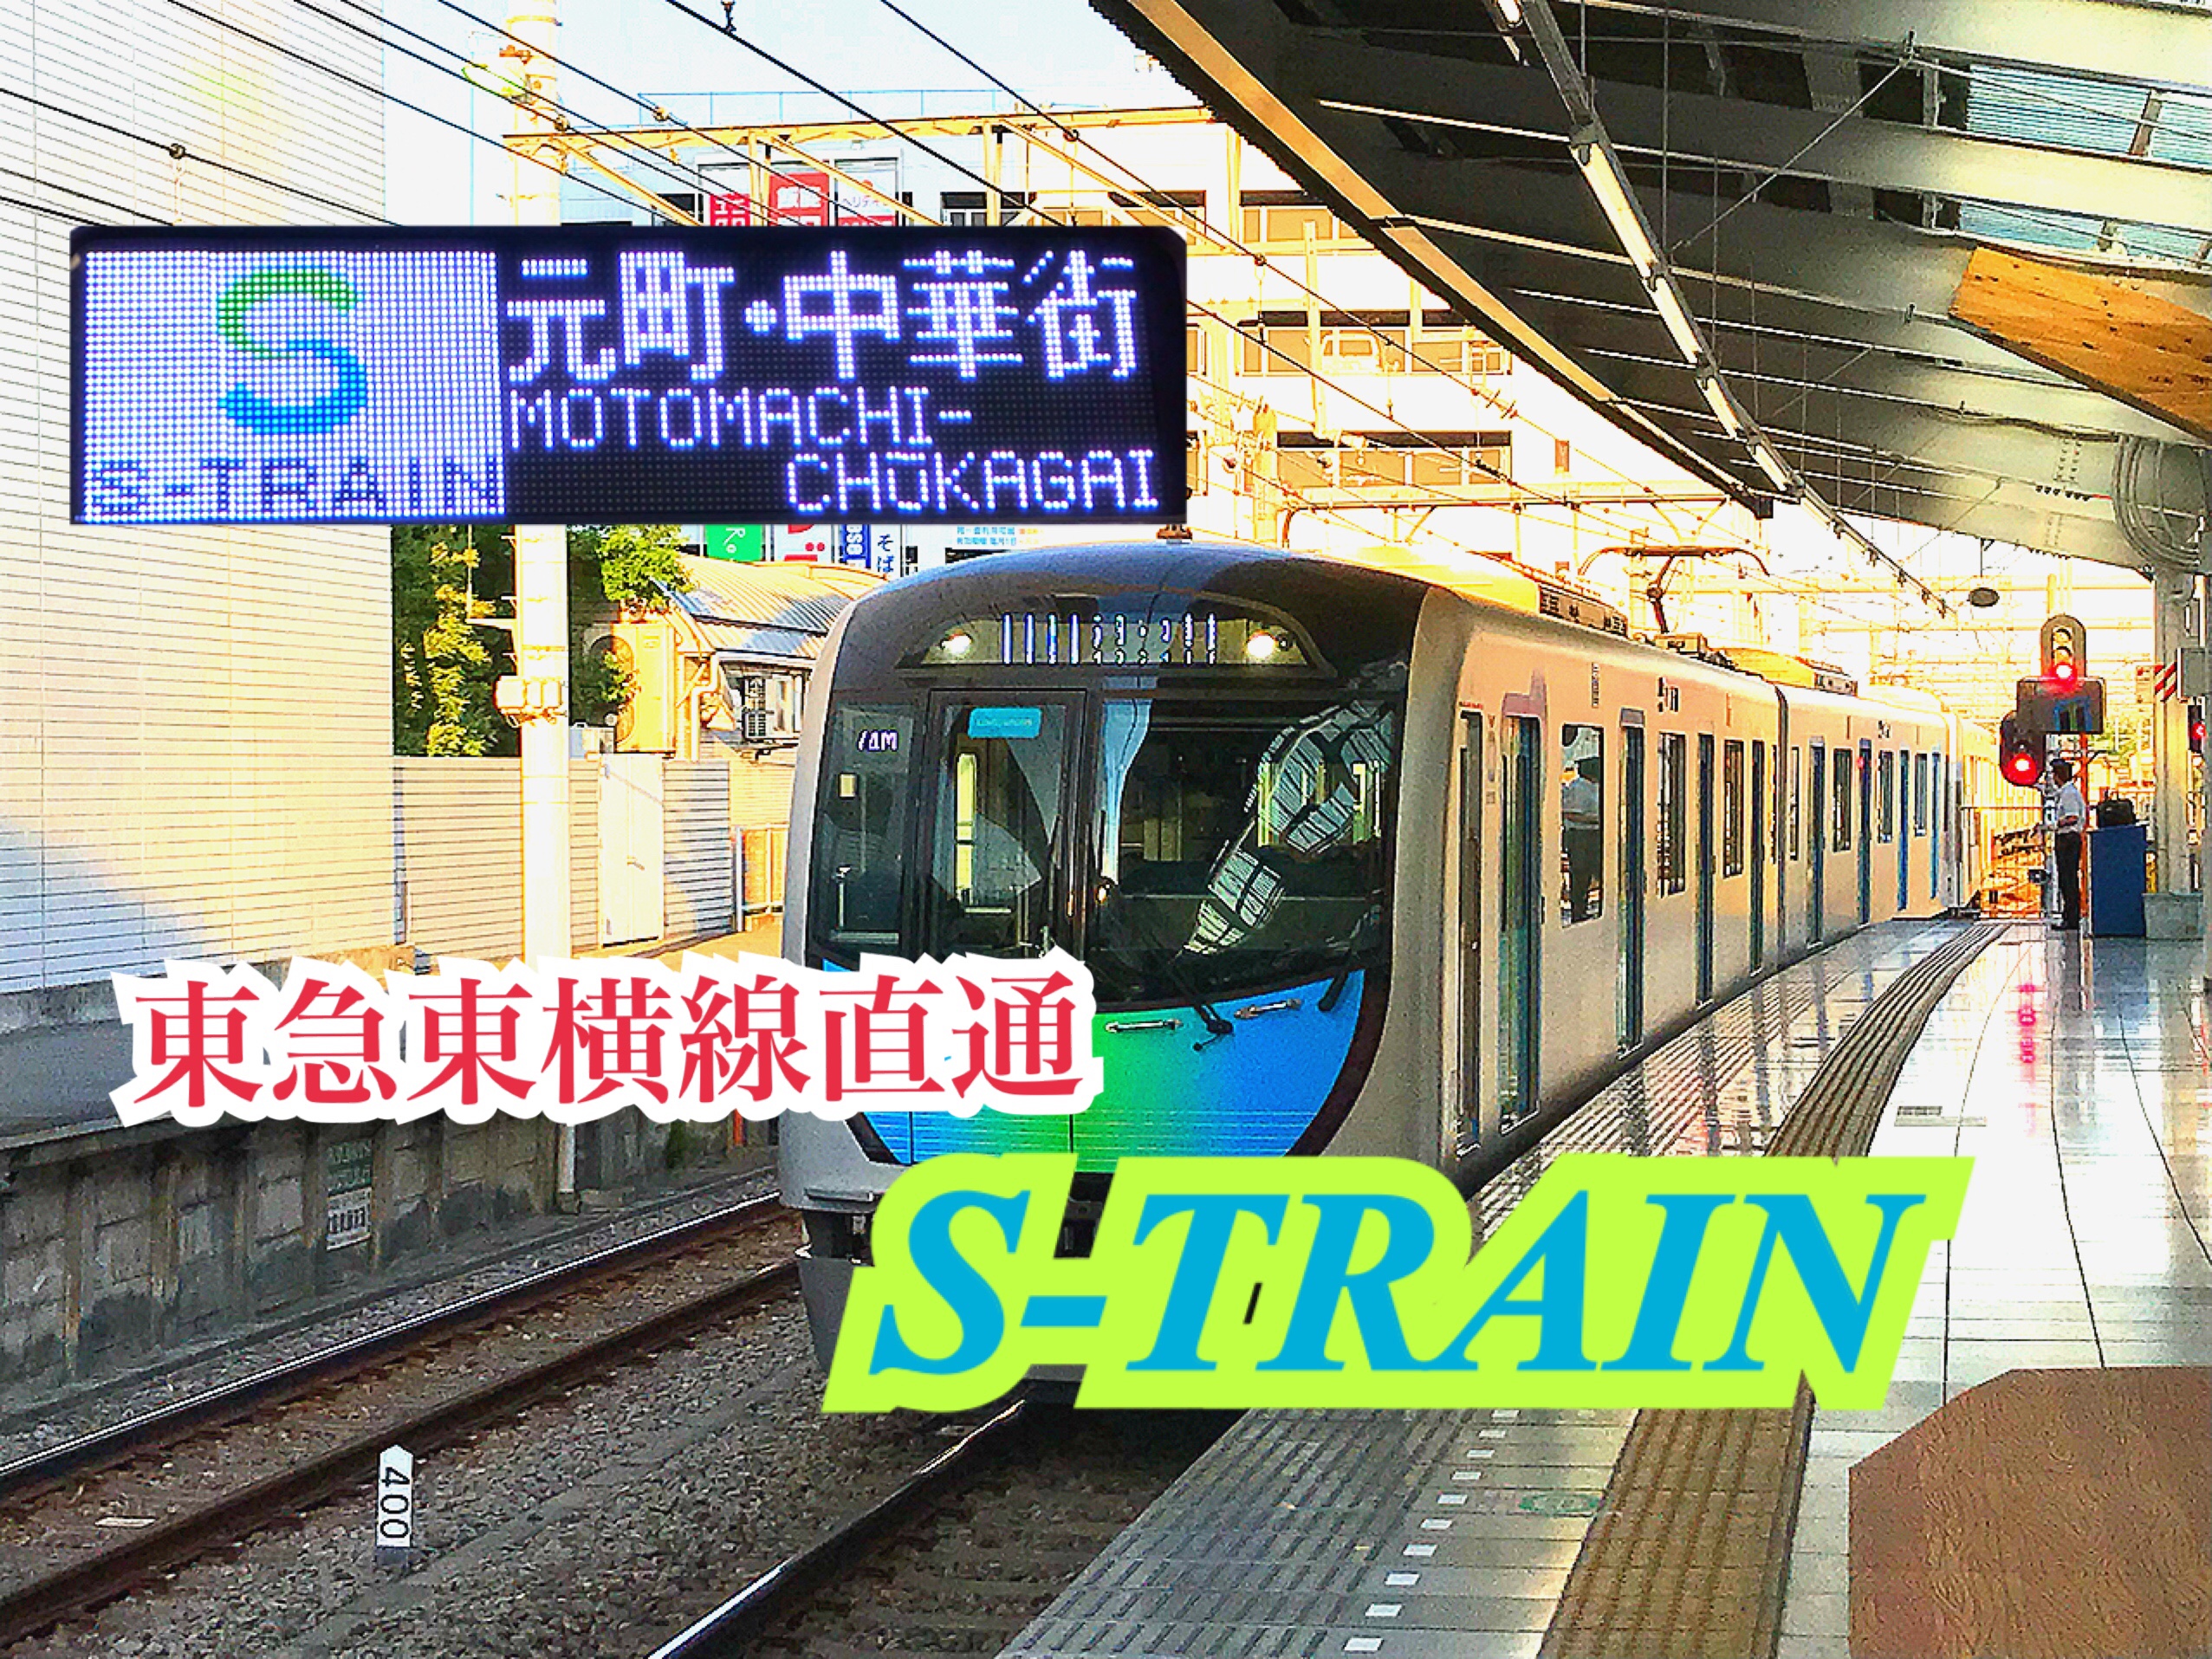 東急直通のS-TRAIN！ガラガラだからこそ快適！S-TRAINで横浜へ！！【西武線の旅】